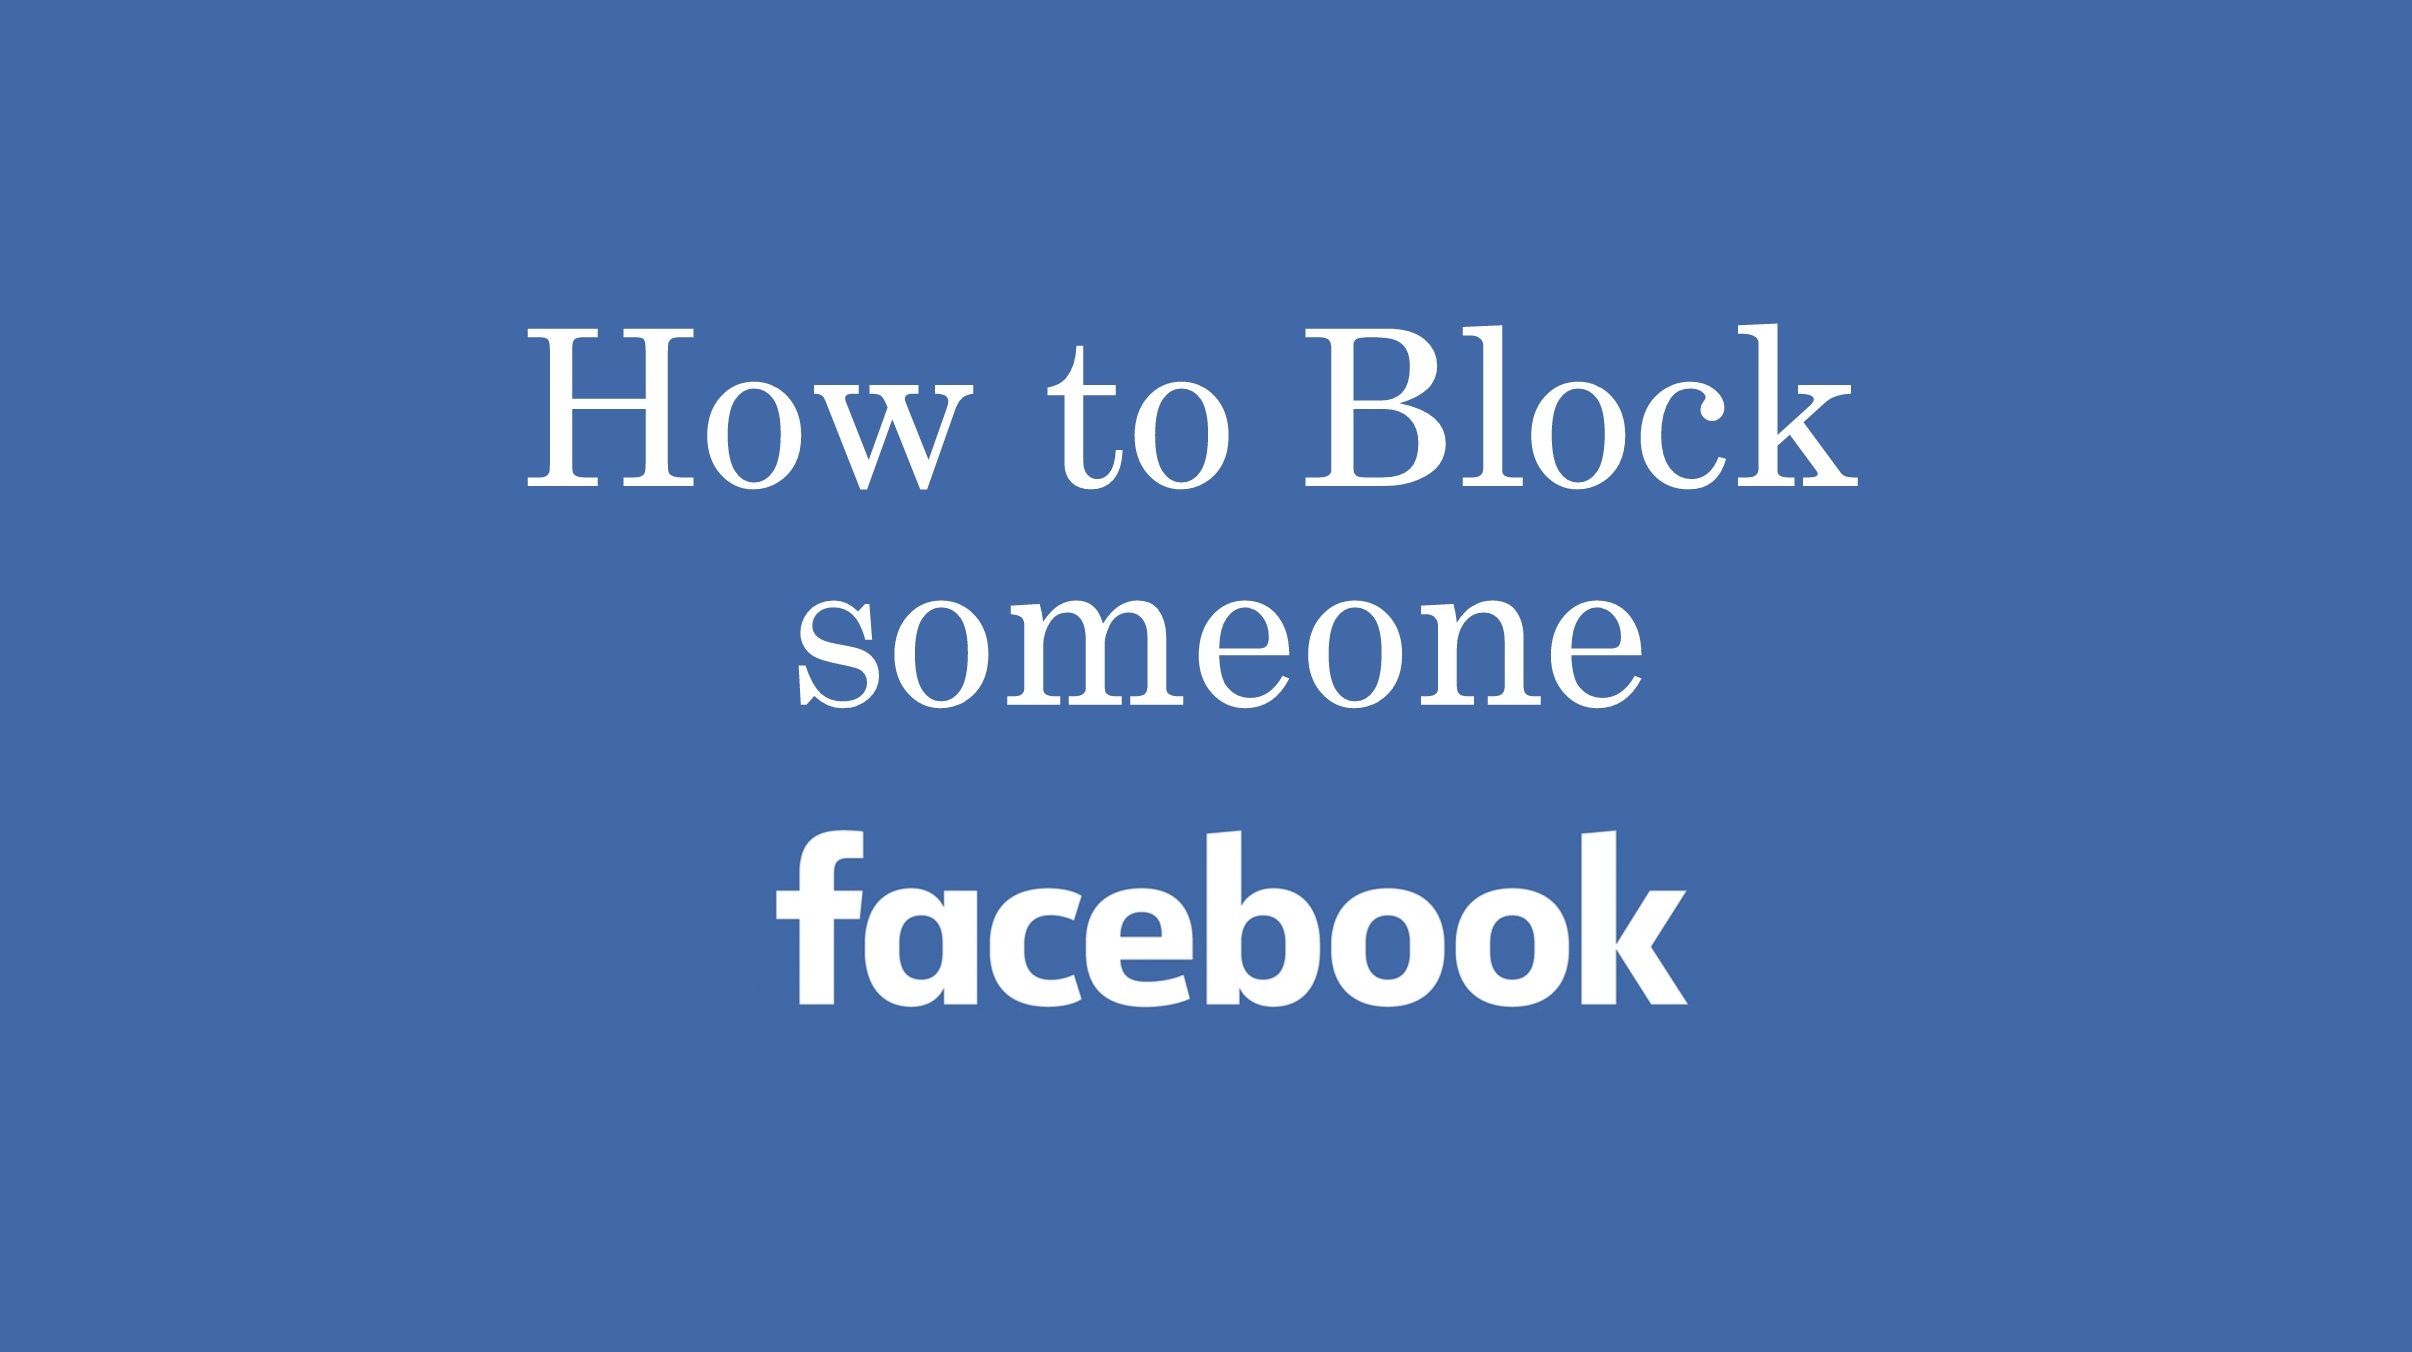 Norbaiti nola blokeatu Facebook [2 Simple Methods]
